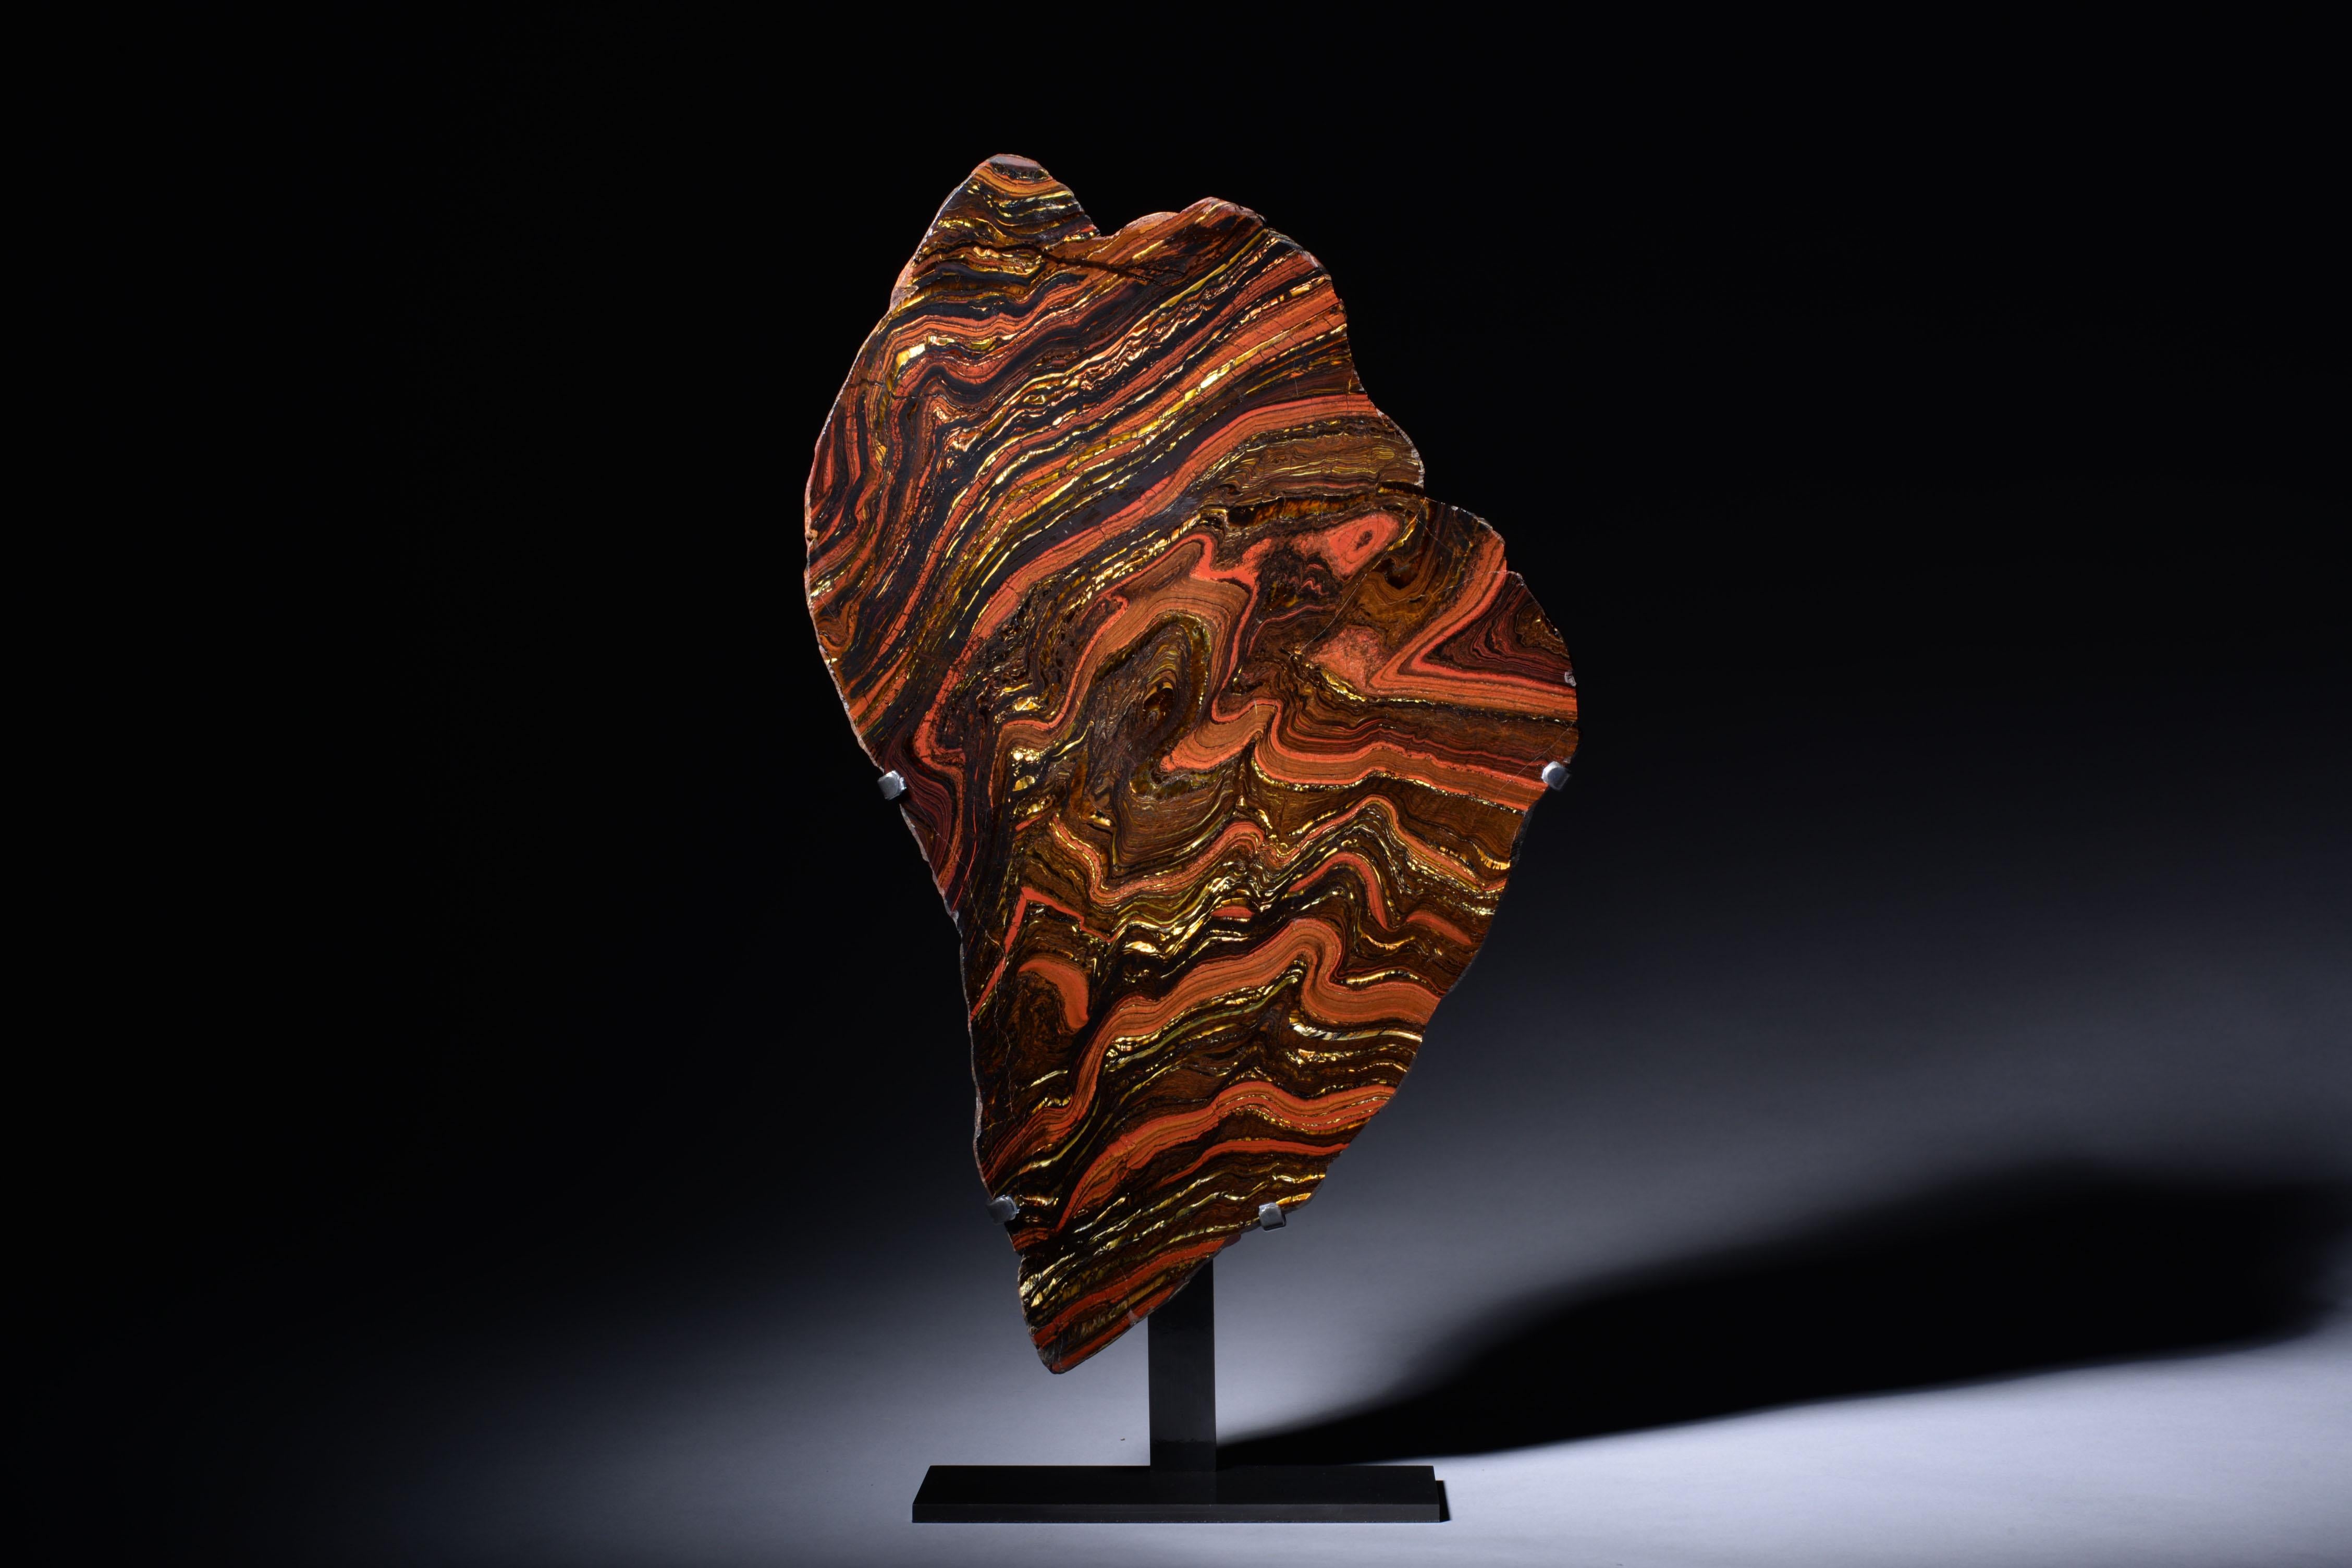 Formation de fossiles de fer rubané
Environ 2,9 milliards d'années.

Cette spectaculaire formation de fer rubanée de Port Hedland, en Australie occidentale, témoigne de la vie la plus ancienne sur Terre : des bactéries unicellulaires simples qui